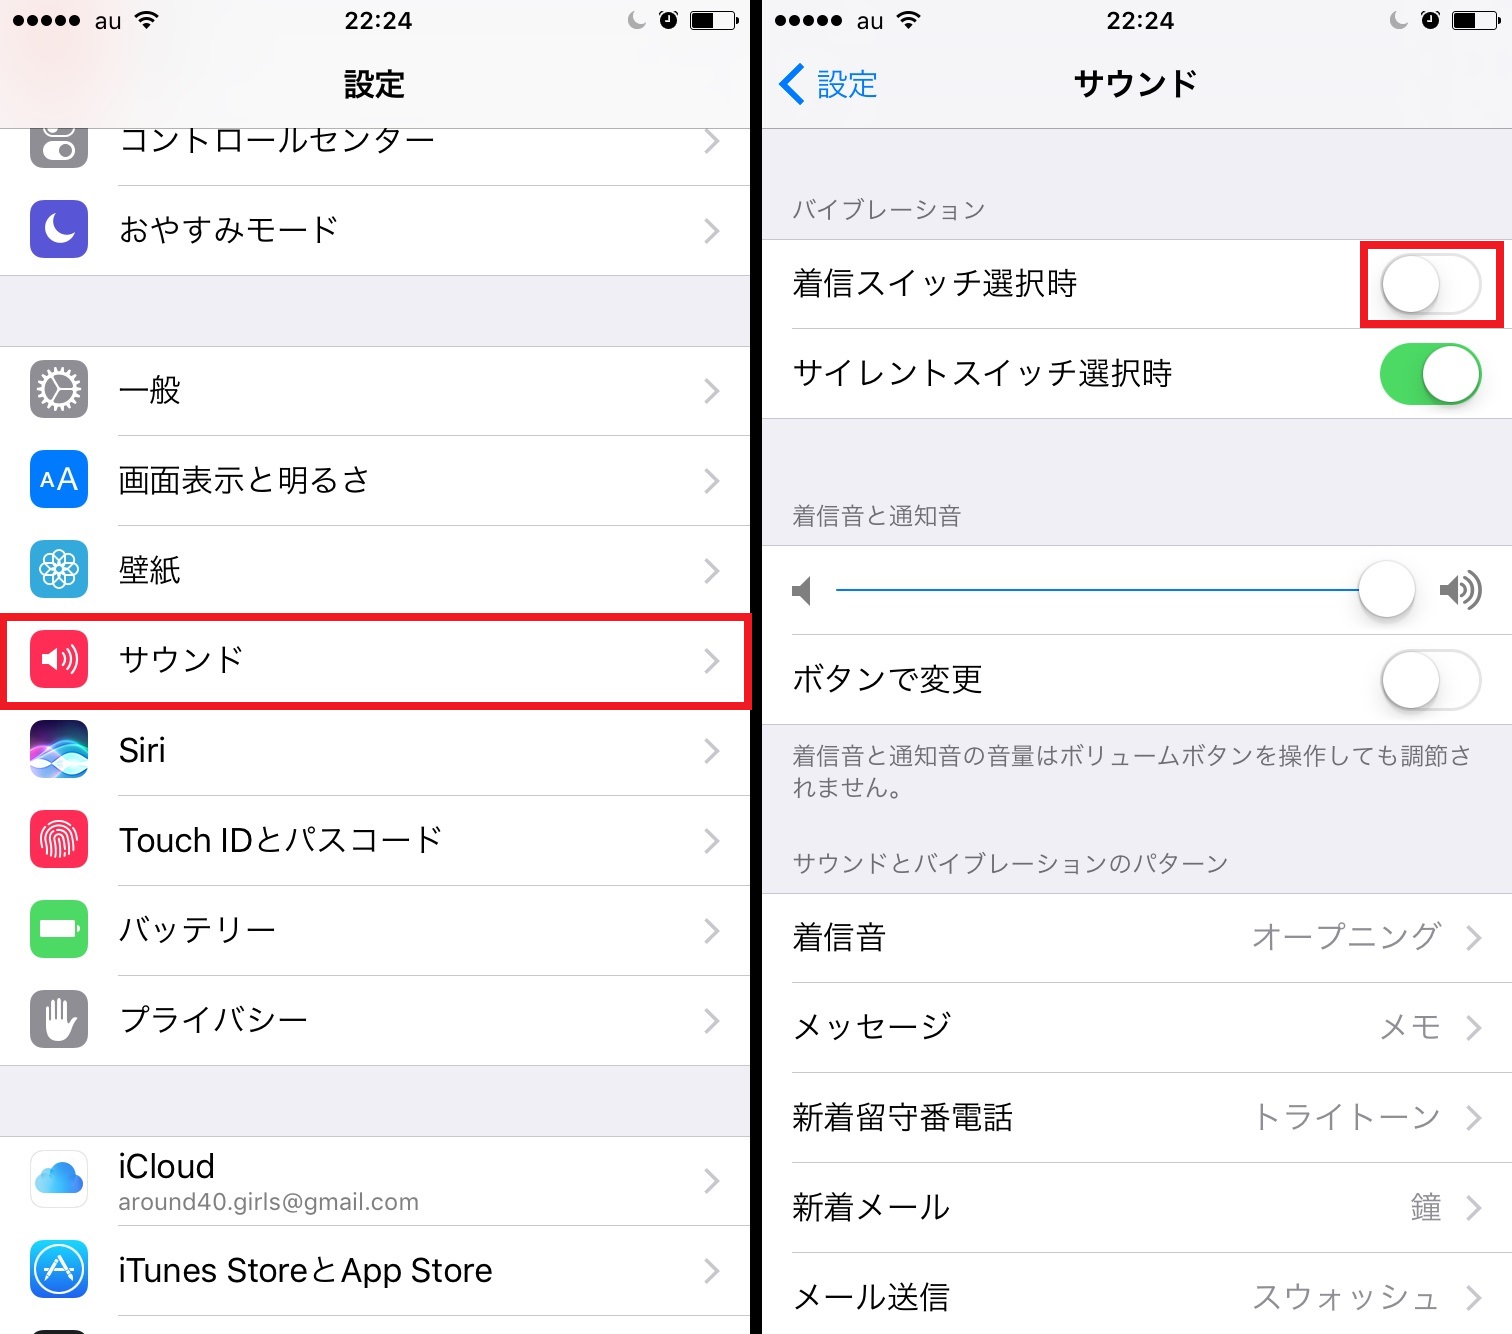 着信時の振動がわずらわしい マナーモード解除時はバイブレーションをオフにしよう Iphone Tips Engadget 日本版